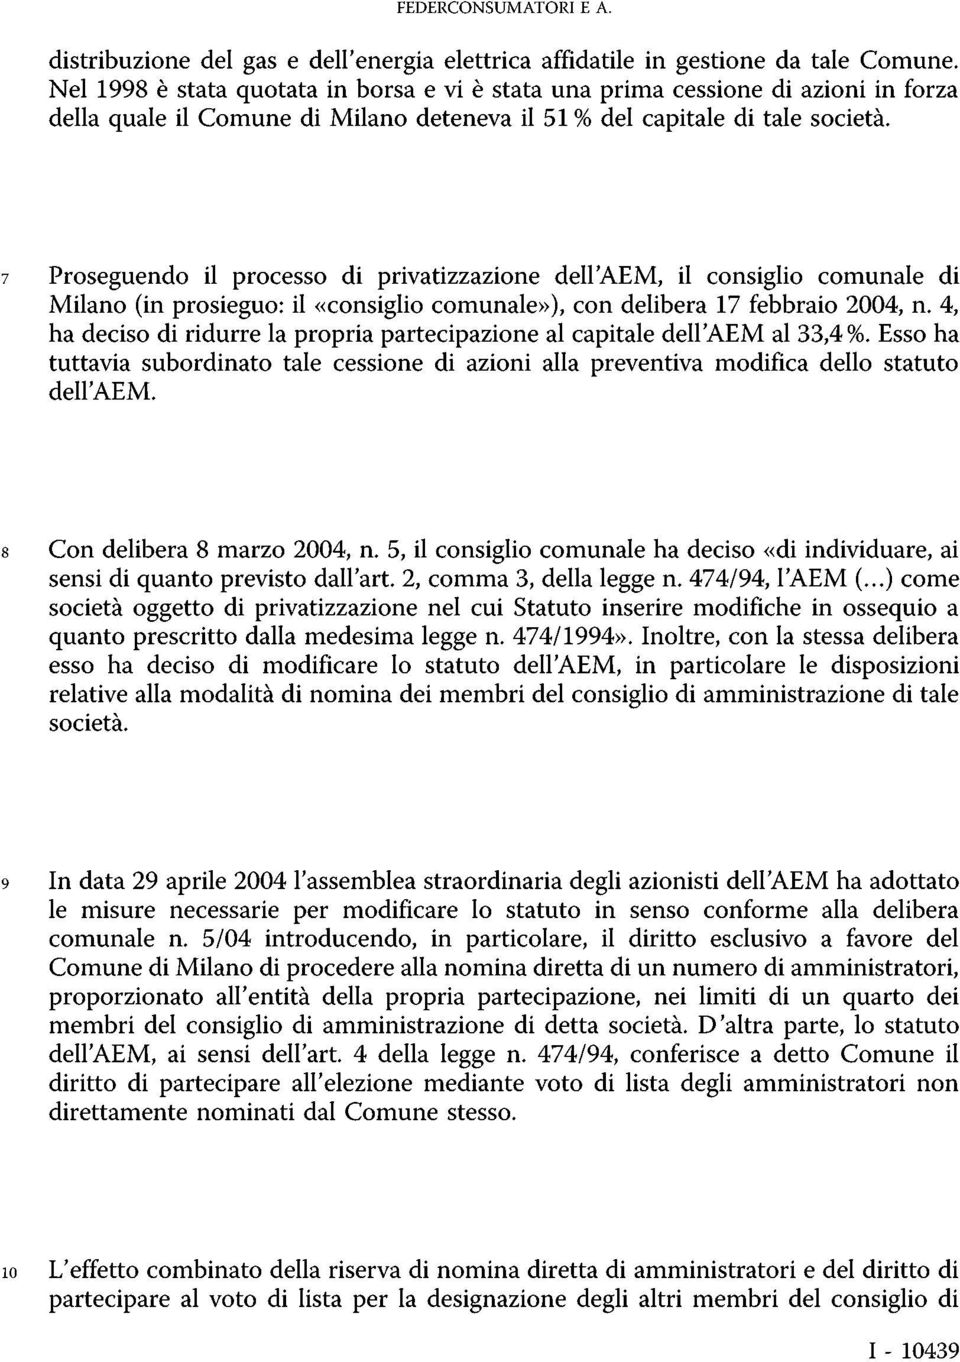 7 Proseguendo il processo di privatizzazione dell'aem, il consiglio comunale di Milano (in prosieguo: il «consiglio comunale»), con delibera 17 febbraio 2004, n.